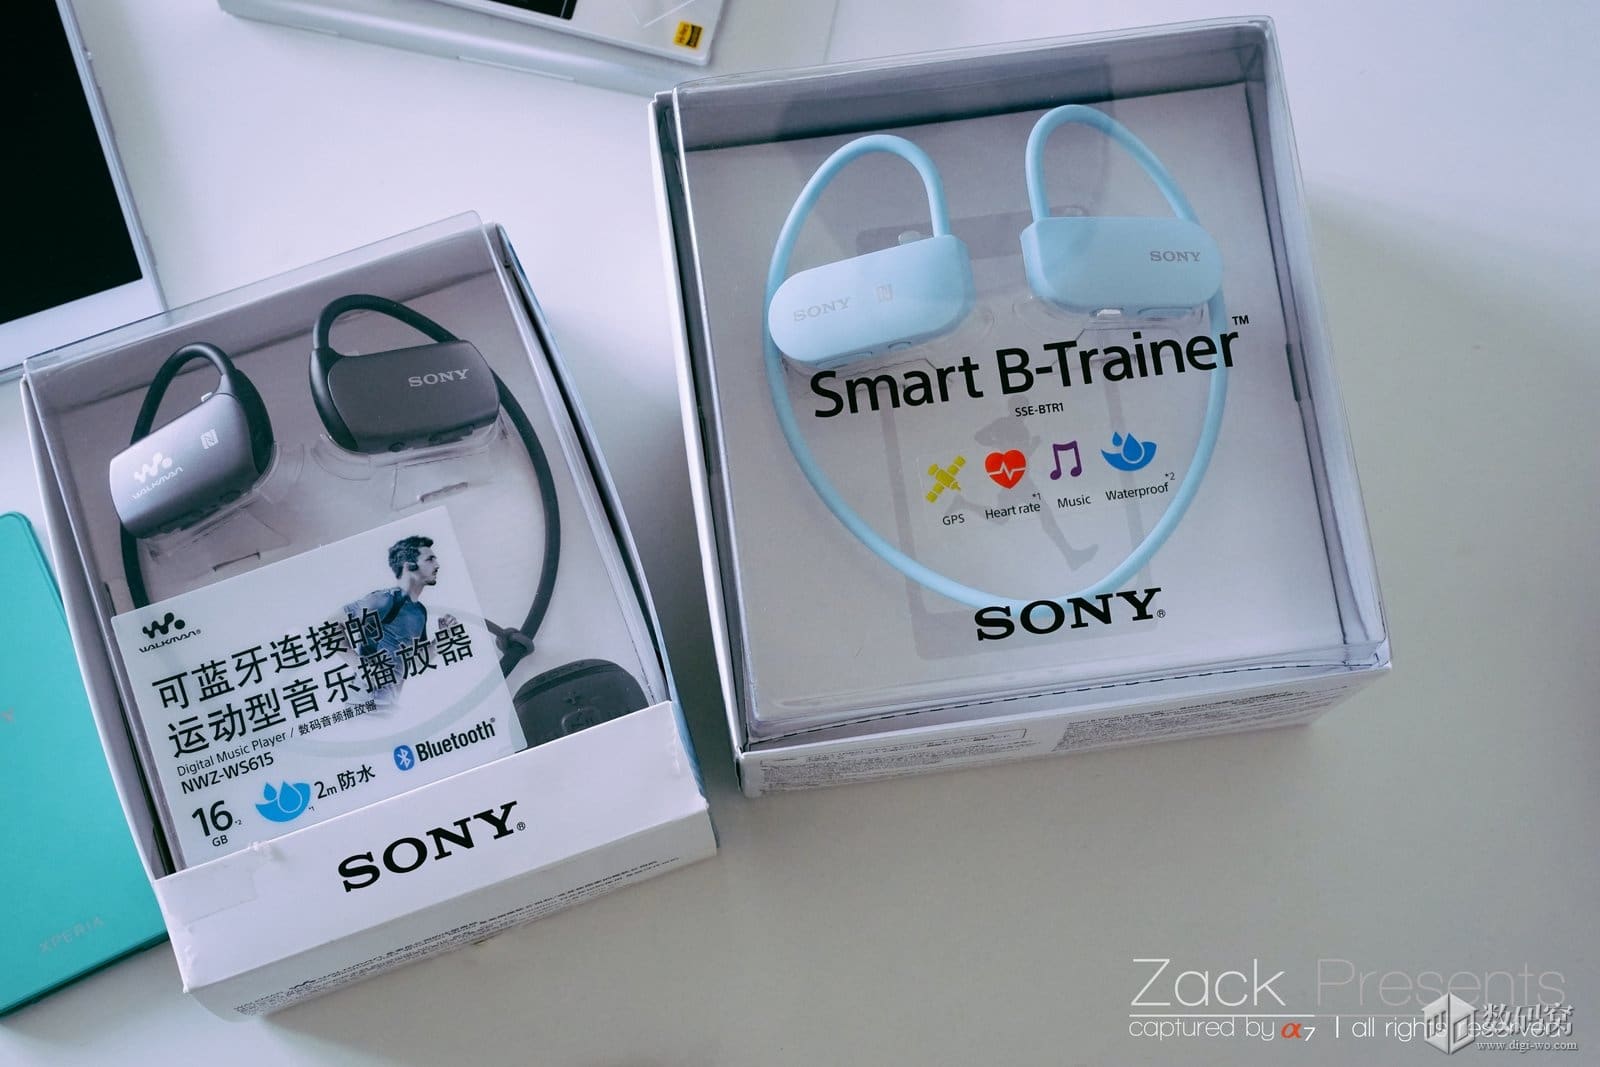 แกะกล่อง Sony Smart B-Trainer เมื่อเครื่องเล่นเพลงกลายเป็นโค้ชสอนวิ่ง